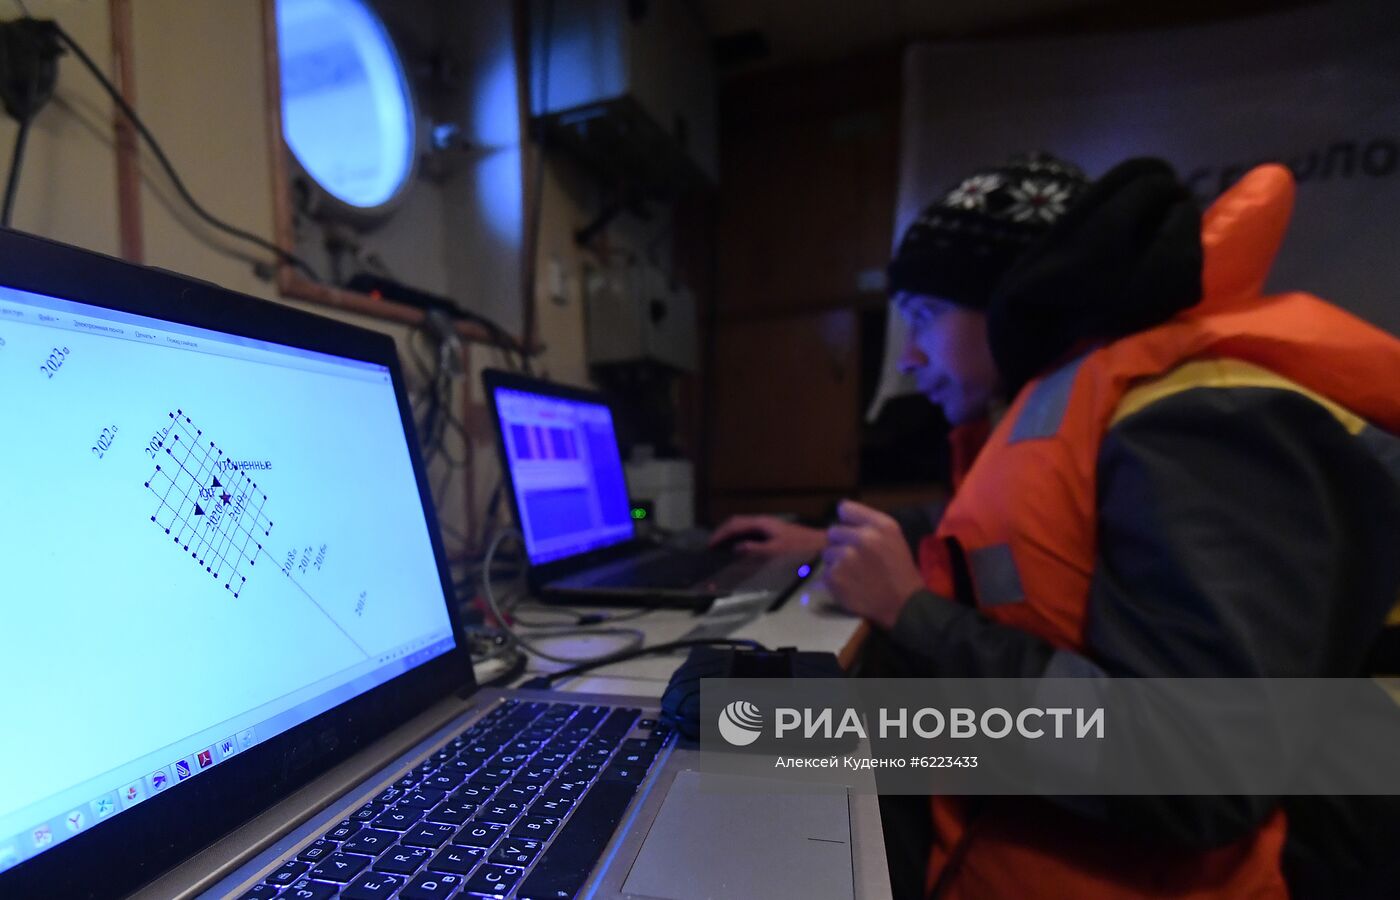 Продолжается кругосветная экспедиция на судне "Адмирал Владимирский"